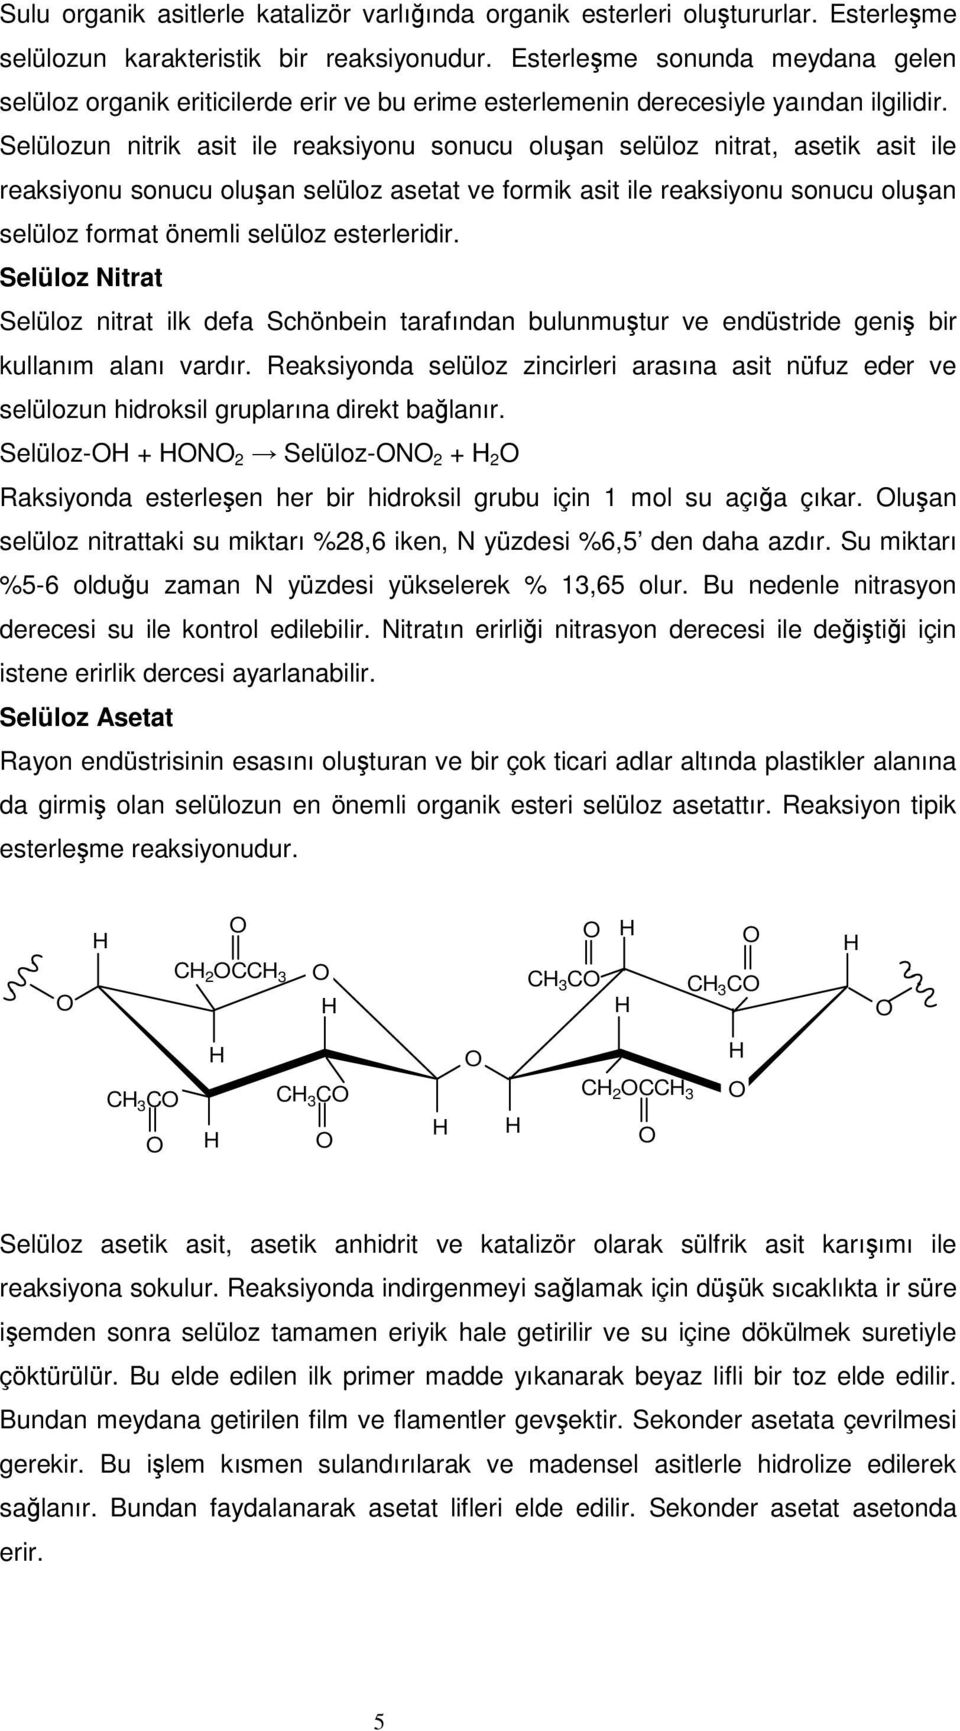 Selülozun nitrik asit ile reaksiyonu sonucu oluan selüloz nitrat, asetik asit ile reaksiyonu sonucu oluan selüloz asetat ve formik asit ile reaksiyonu sonucu oluan selüloz format önemli selüloz